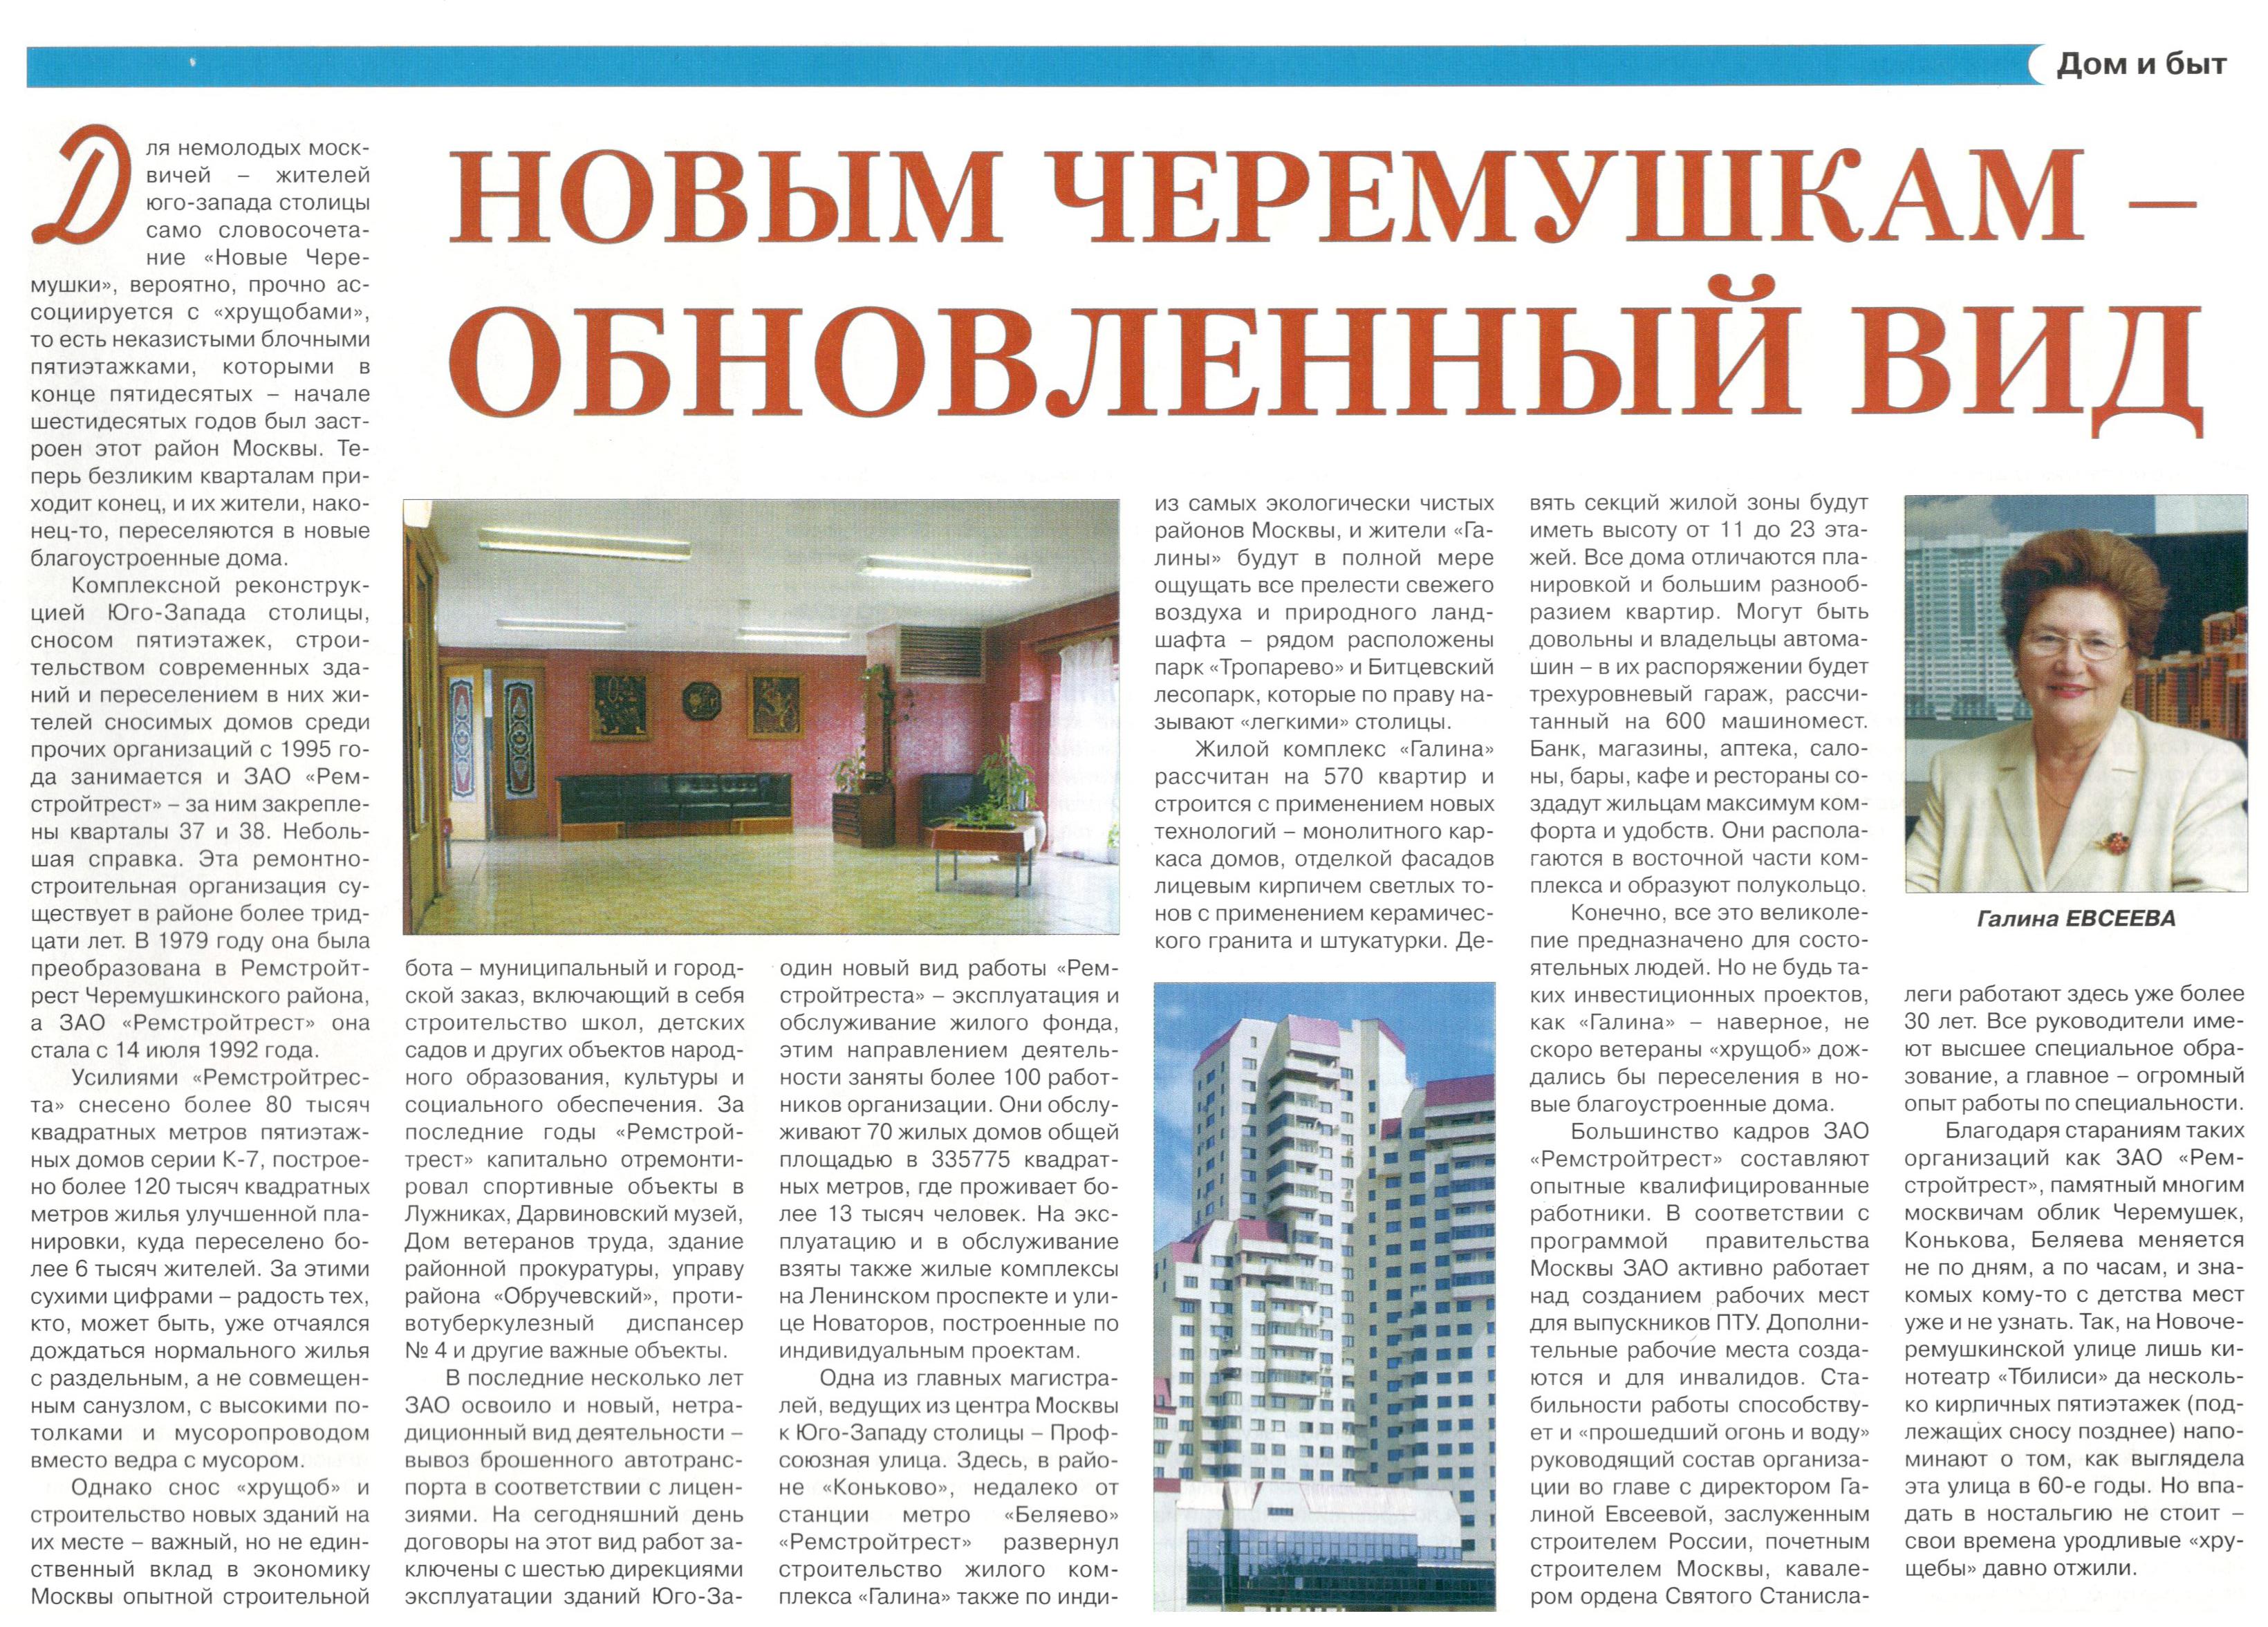 Газета Содружество №2 (февраль 2004)